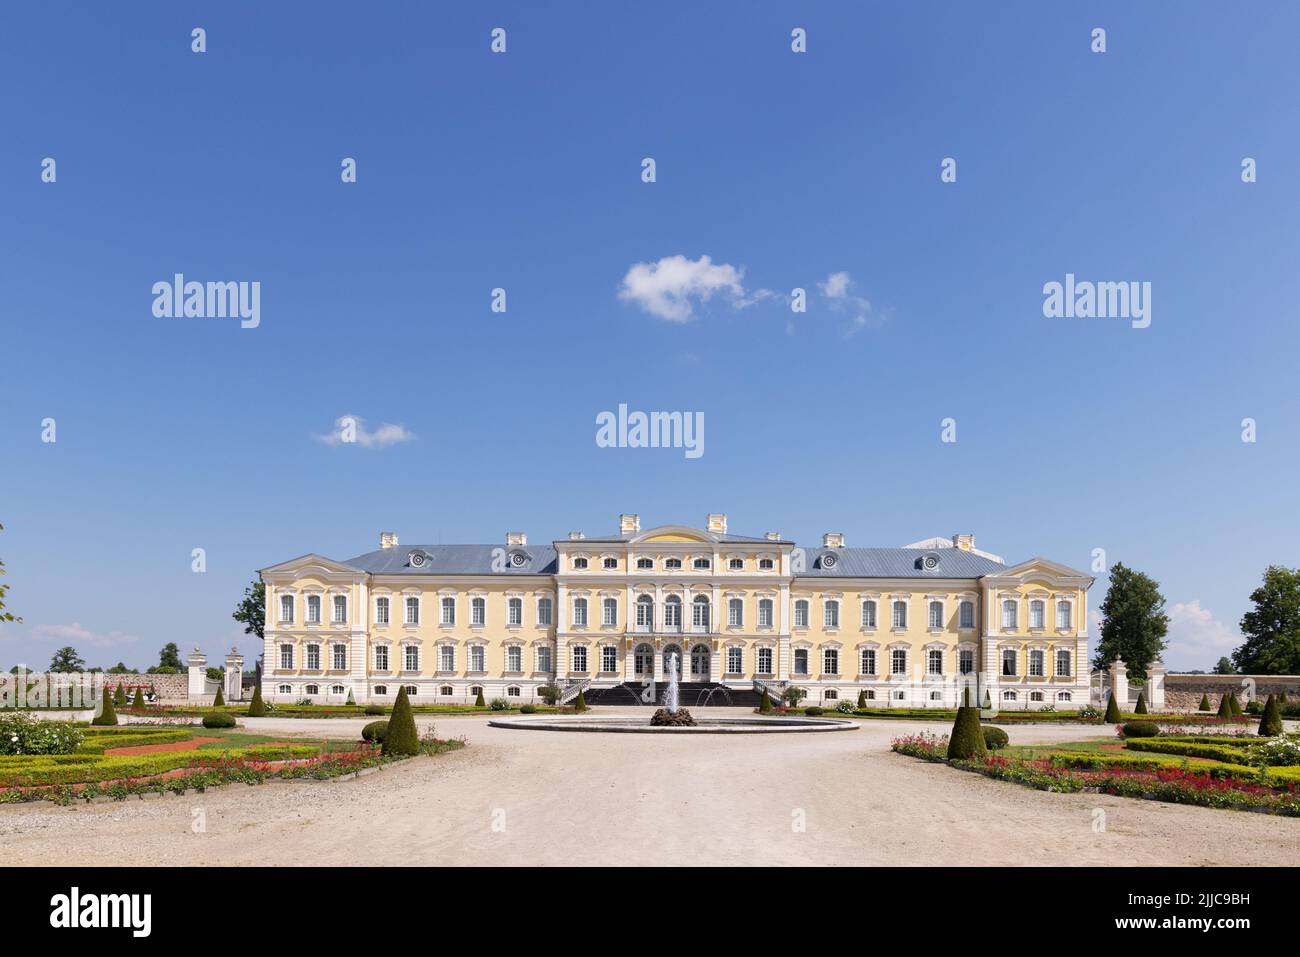 Palacio Rundale, Letonia; un palacio barroco del siglo 18th construido por Ernst Johann von Biron en la década de 1700s, ahora un museo y jardín, Letonia, Europa Foto de stock